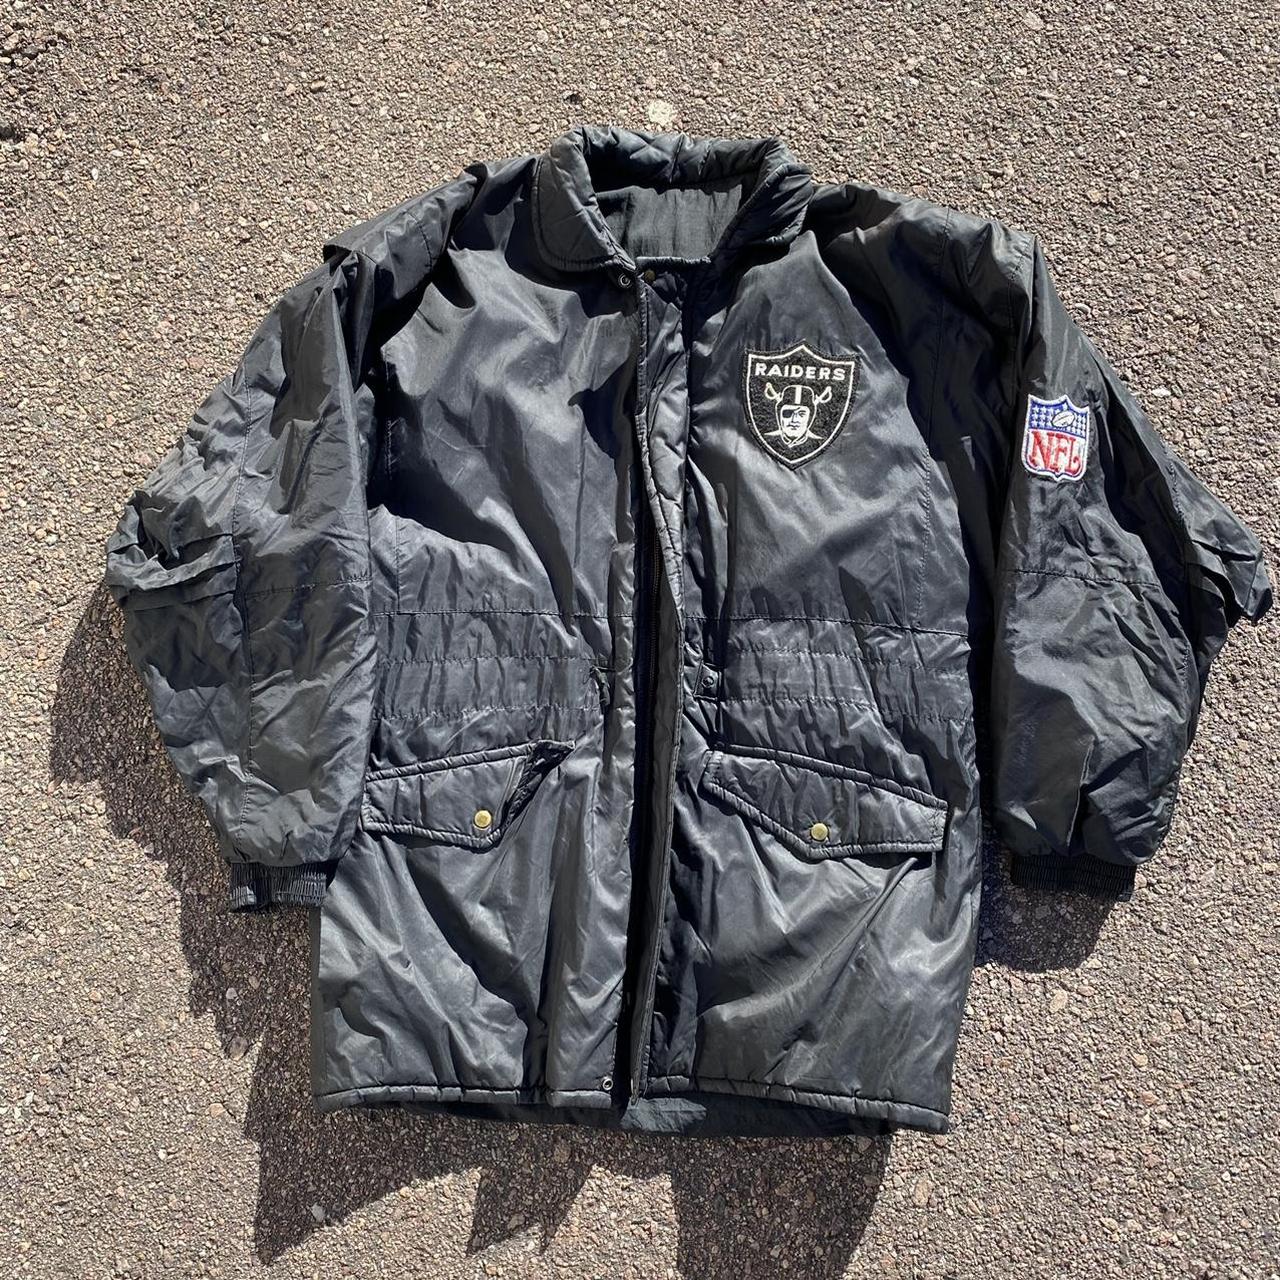 Vintage 90s Las Vegas Raiders NFL Jacket/Parka - Depop